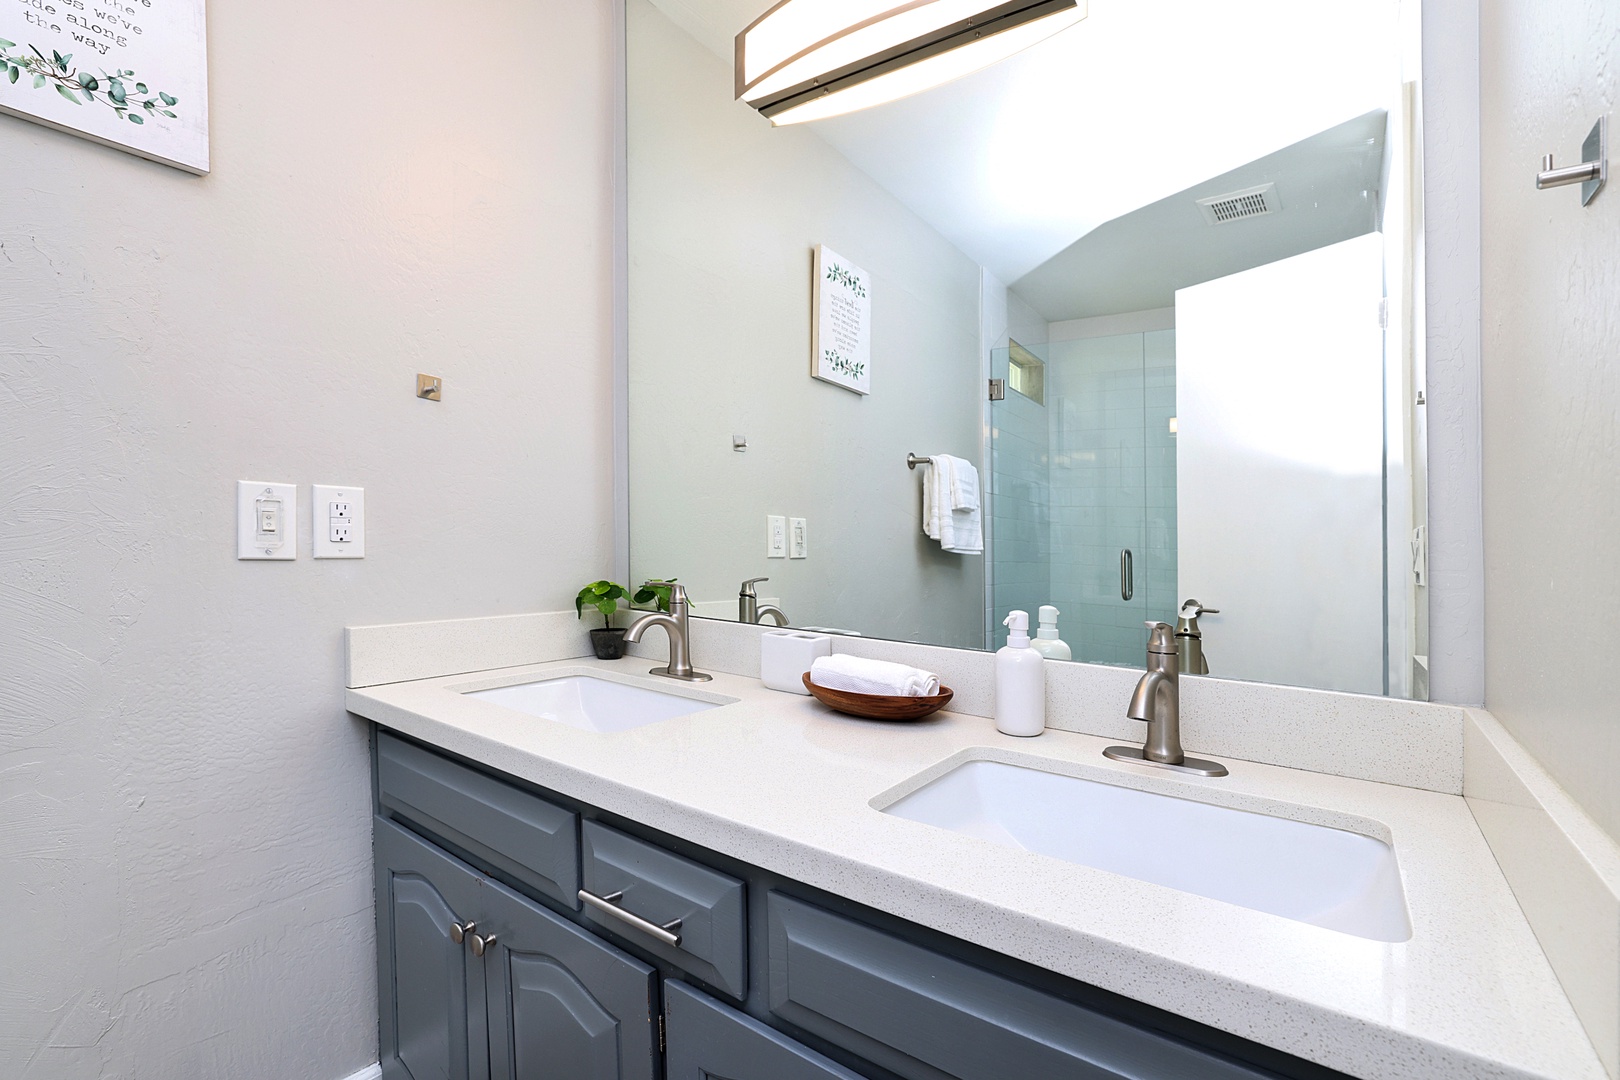 Master Bathroom - dual vanity sink